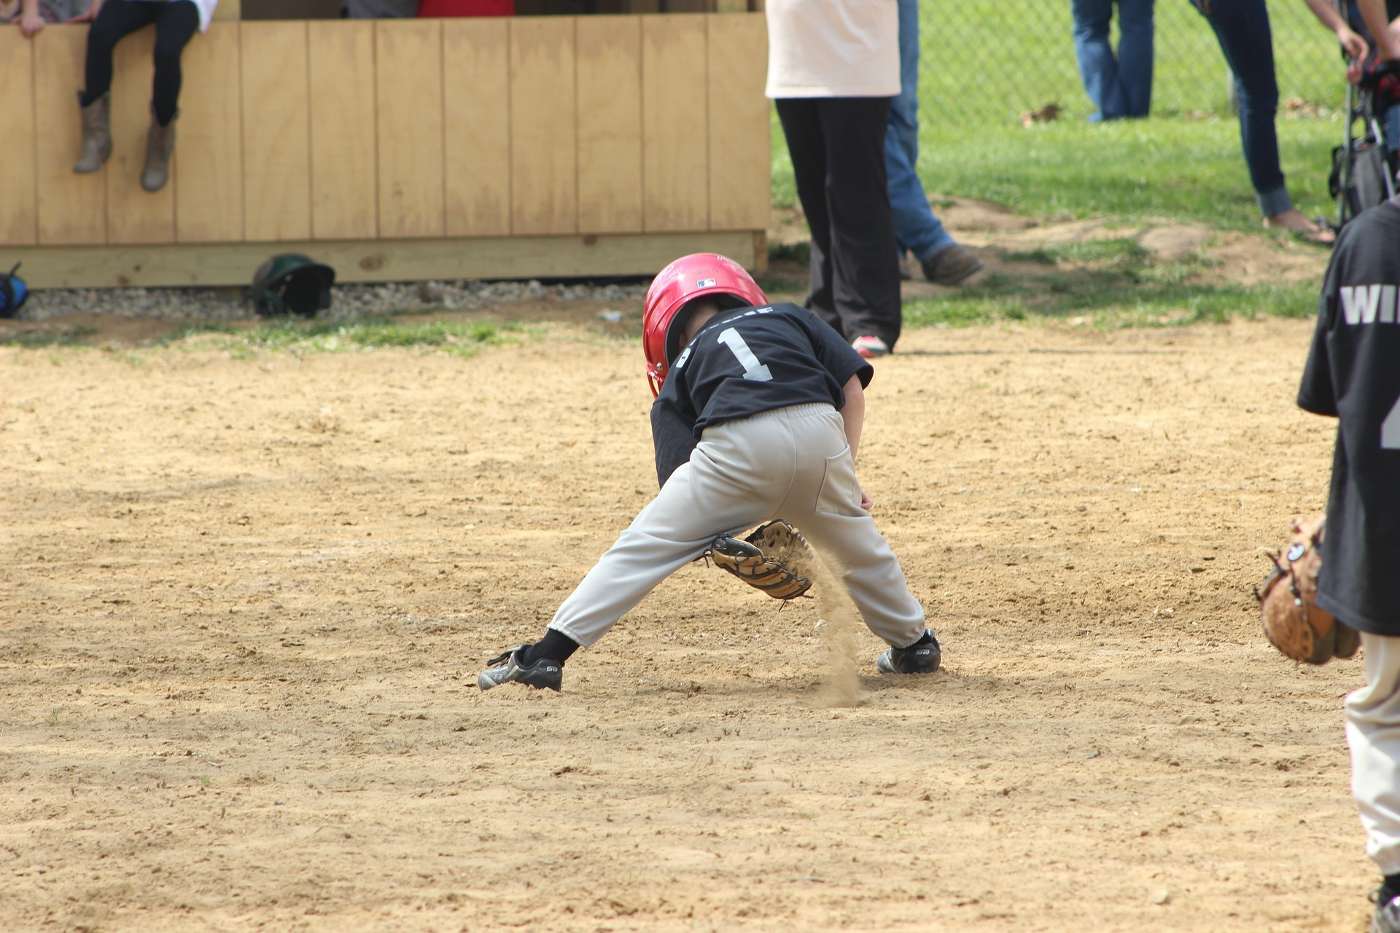 Little boy playing baseball - The 5 Best Toddler Baseball Gloves